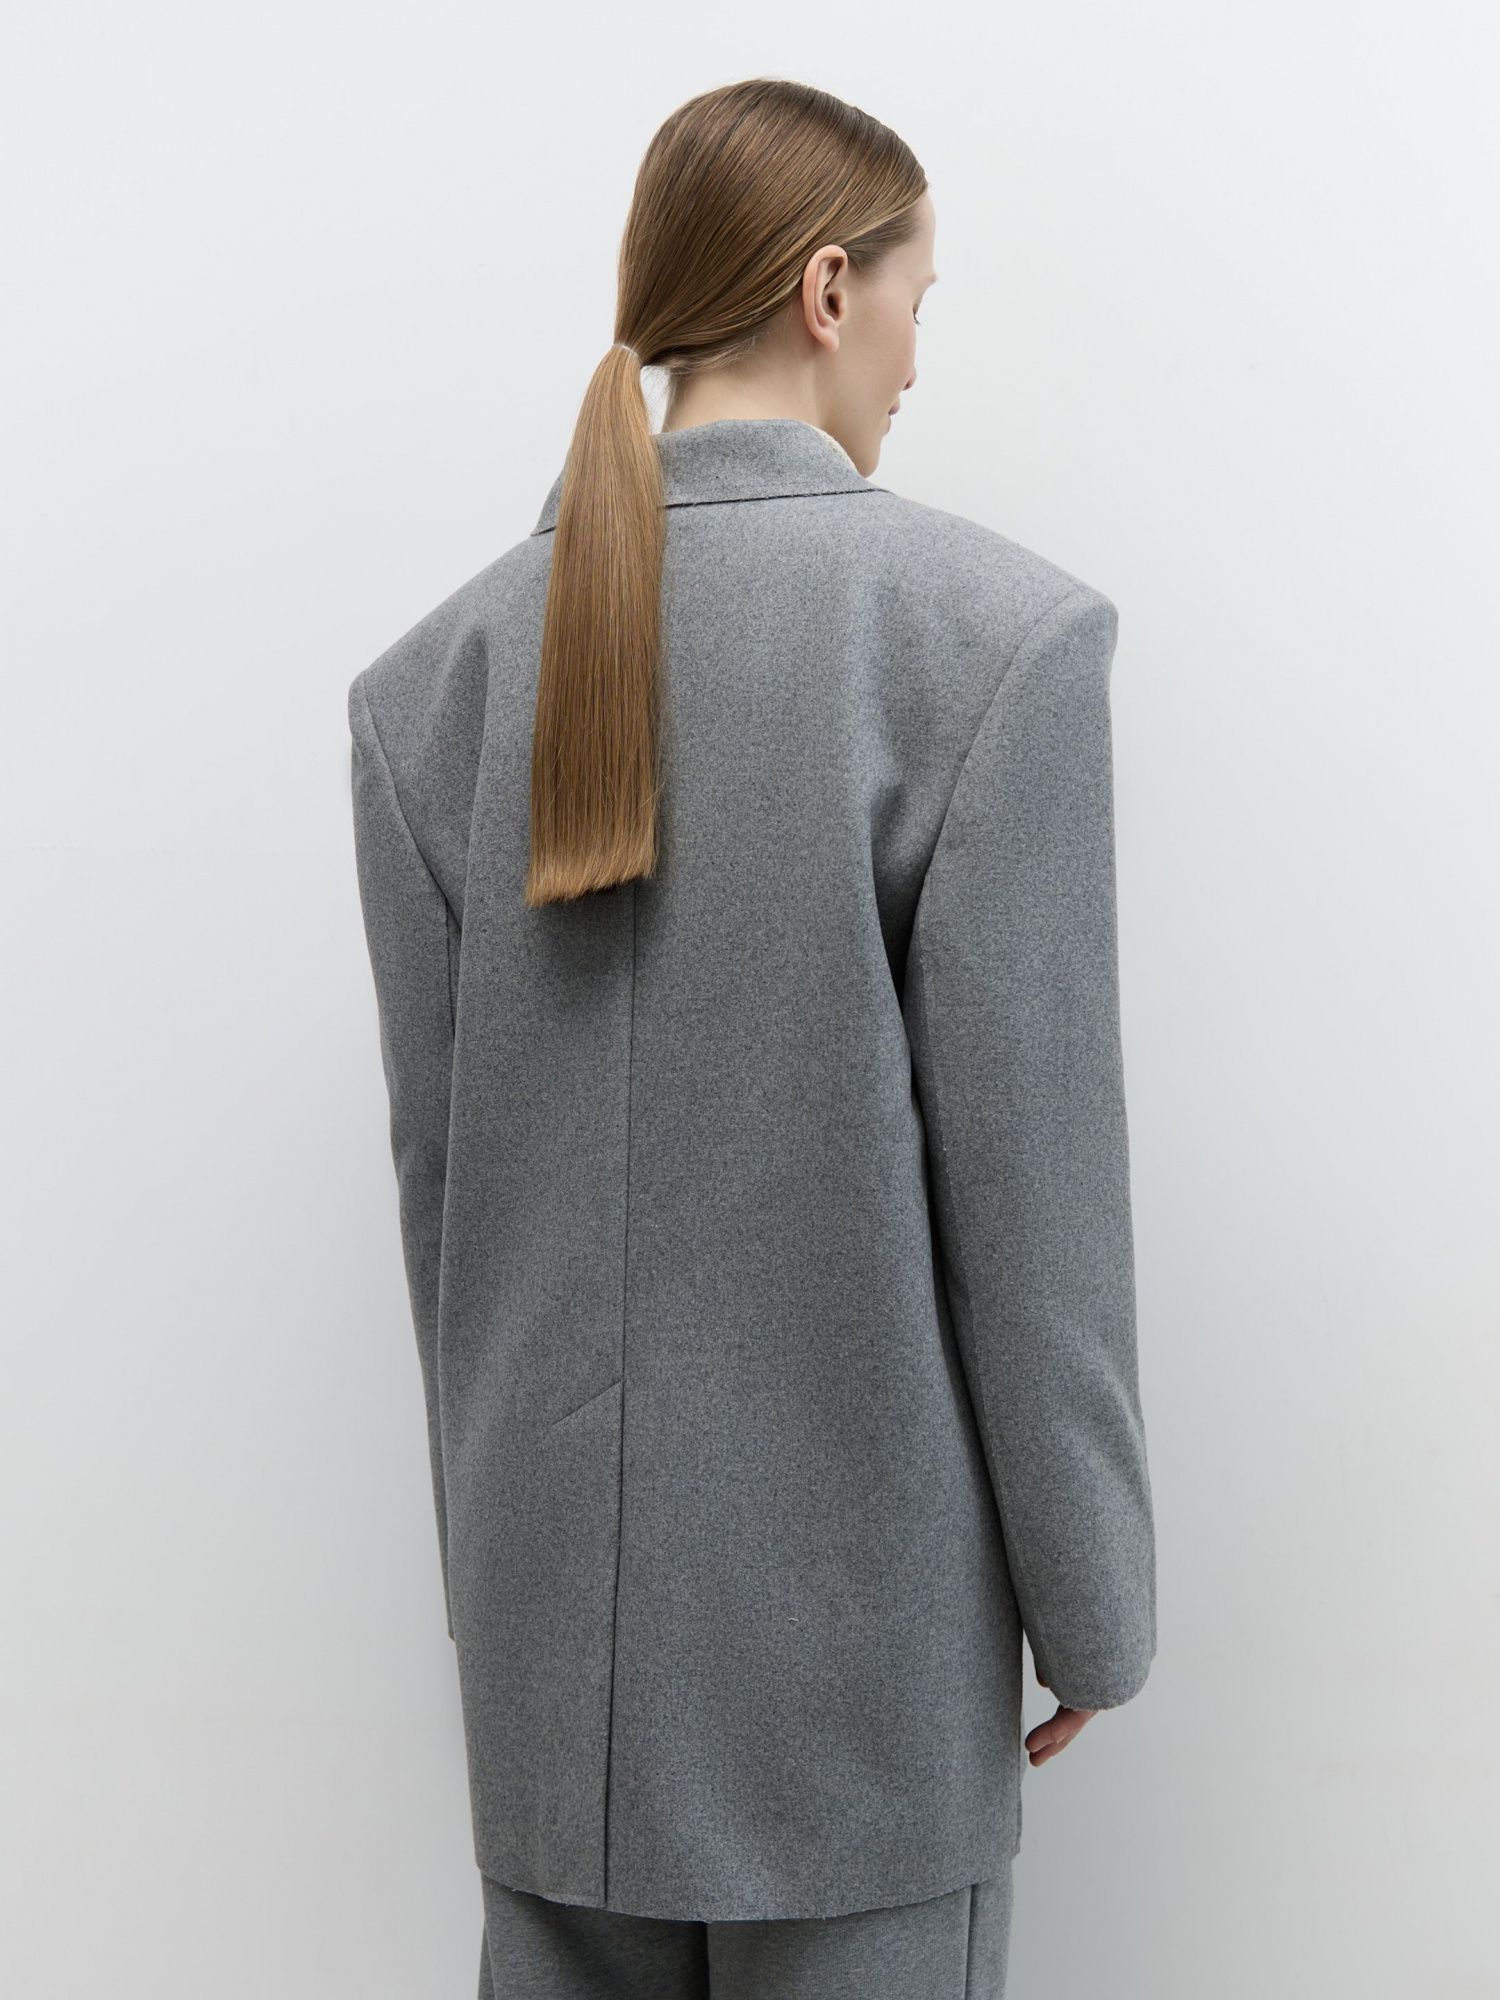 Жакет-пальто из итальянской шерсти серый - фото 5. Around